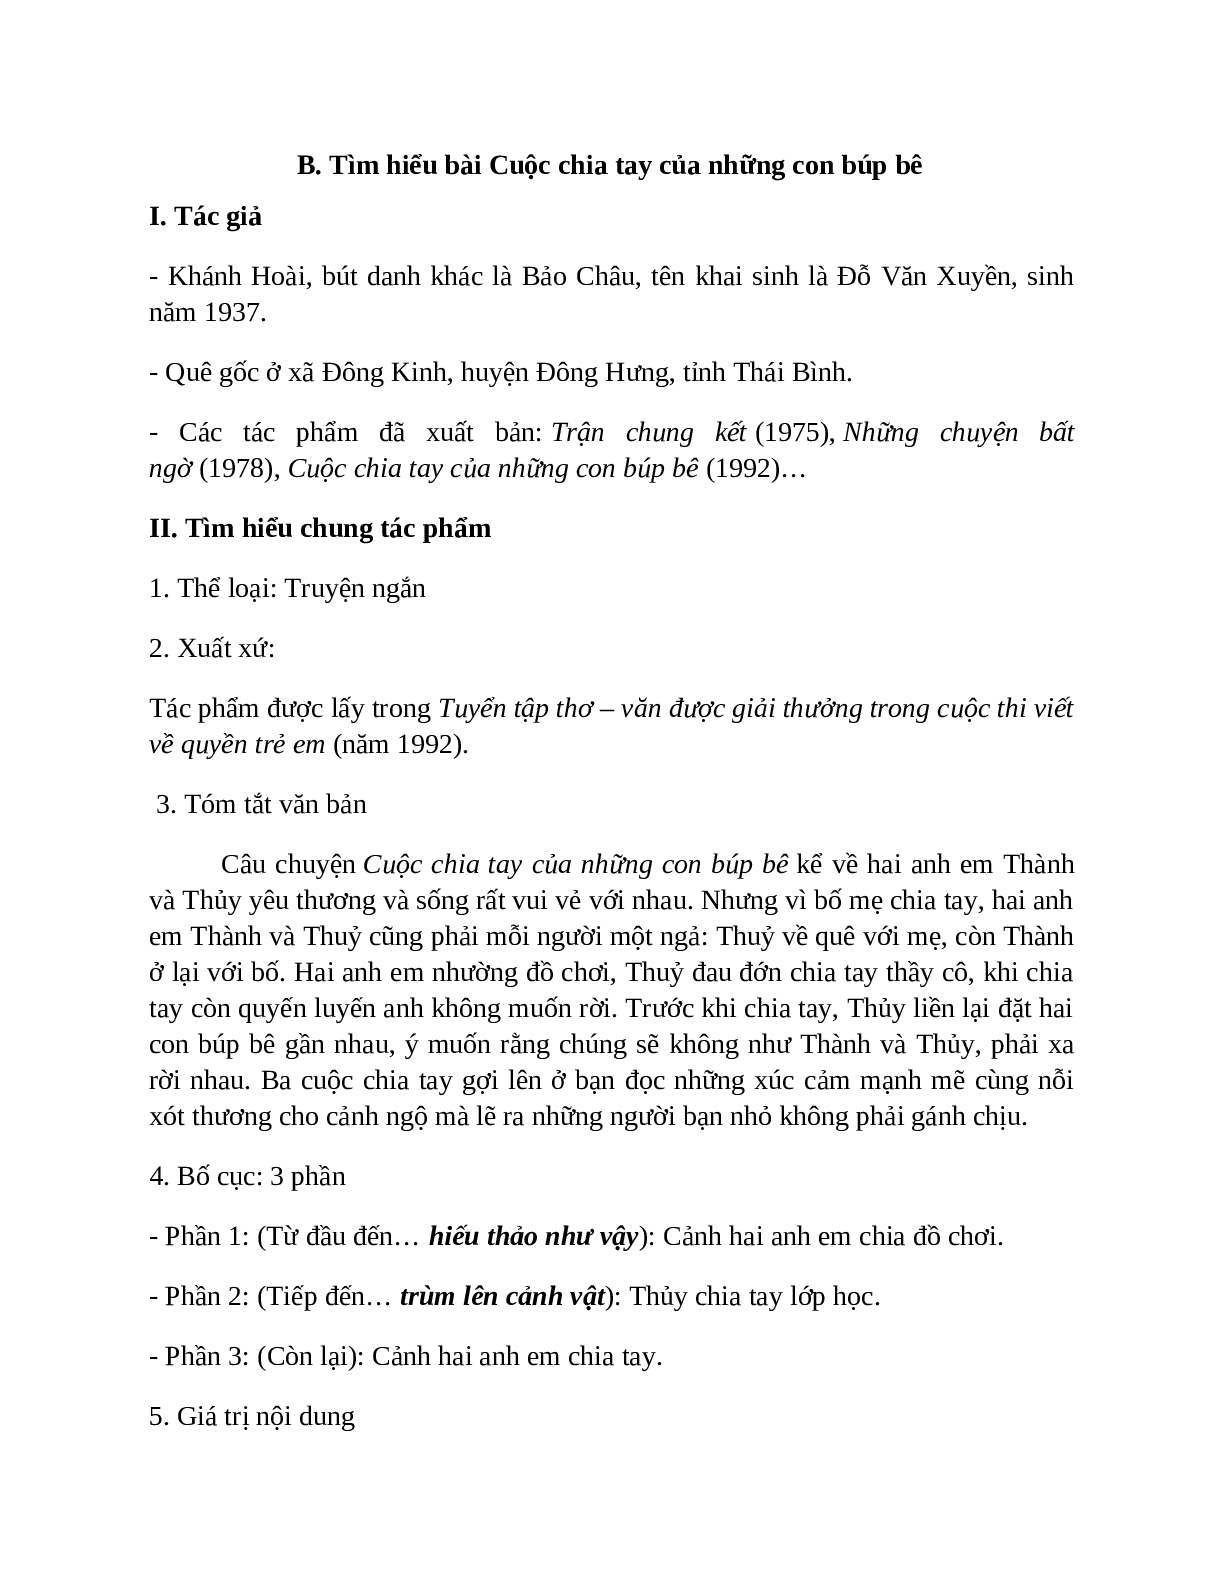 Sơ đồ tư duy bài Cuộc chia tay của những con búp bê dễ nhớ, ngắn nhất - Ngữ văn lớp 7 (trang 2)